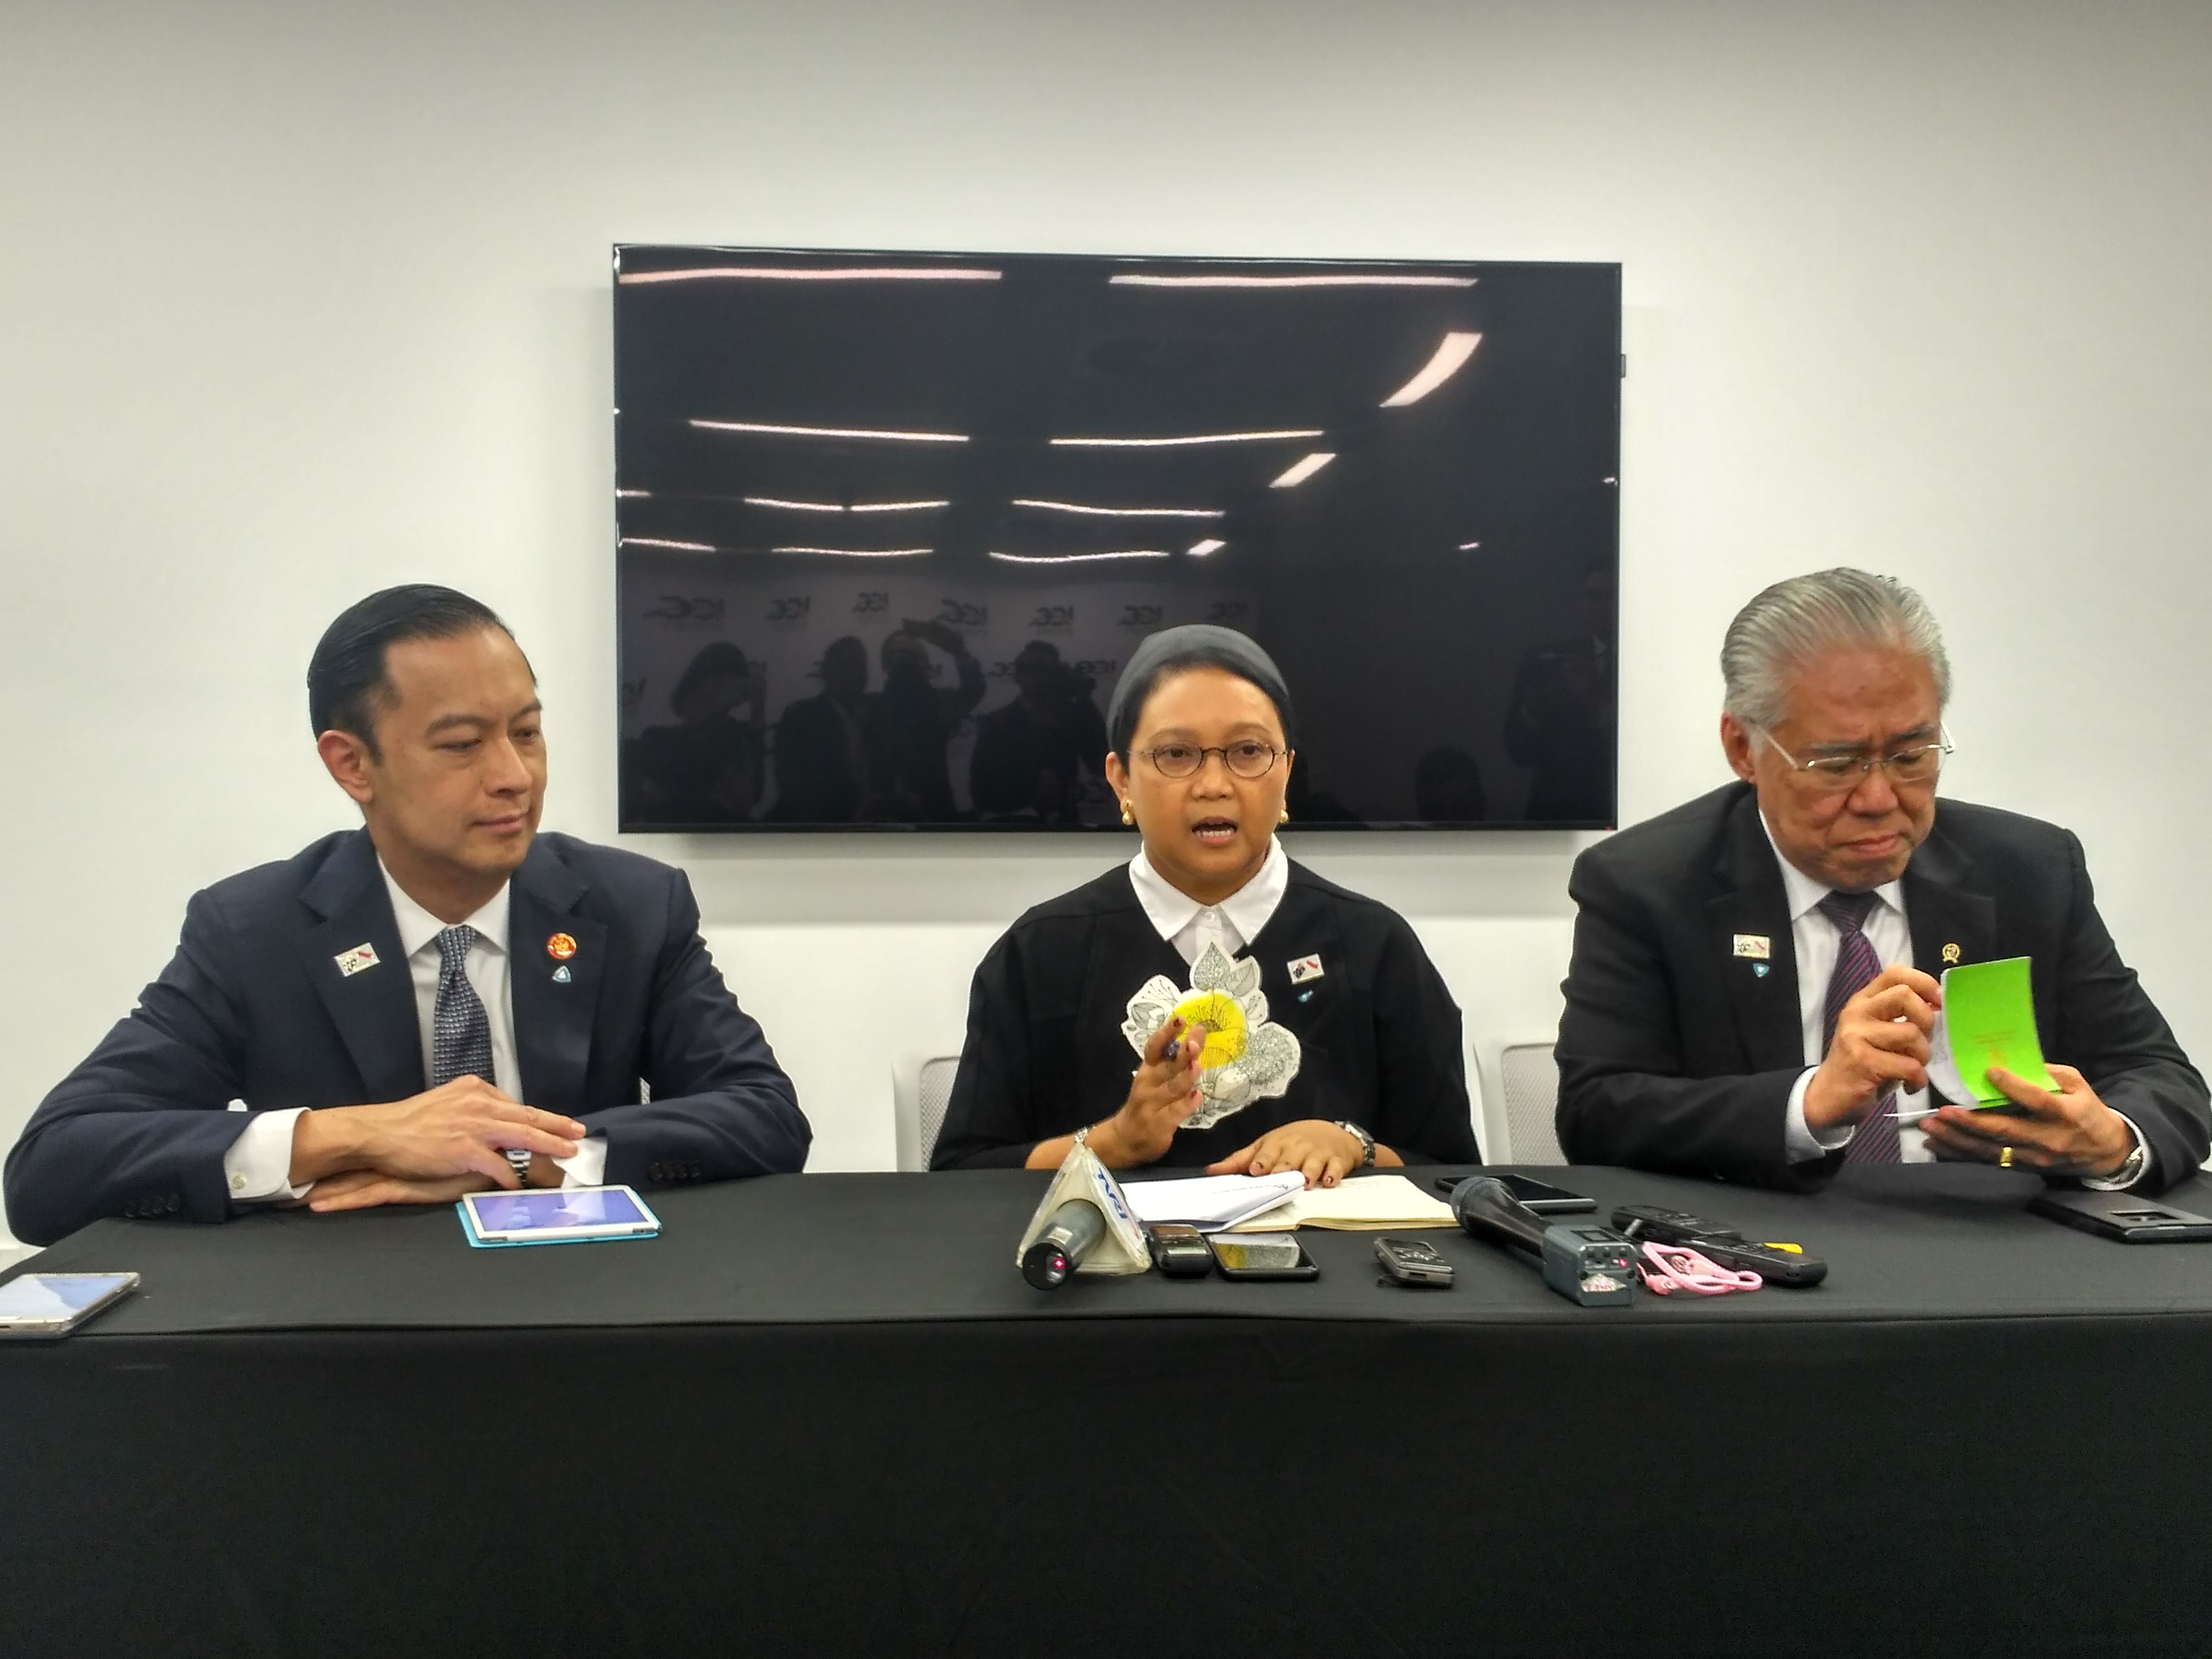 Kepala BKPM, Menlu, dan Mendag menyampaikan konferensi pers usai pertemuan Presiden Jokowi dengan Diaspora Indonesia, di Sydney, Australia, Minggu (26/2). (Foto: Humas/Dinda)